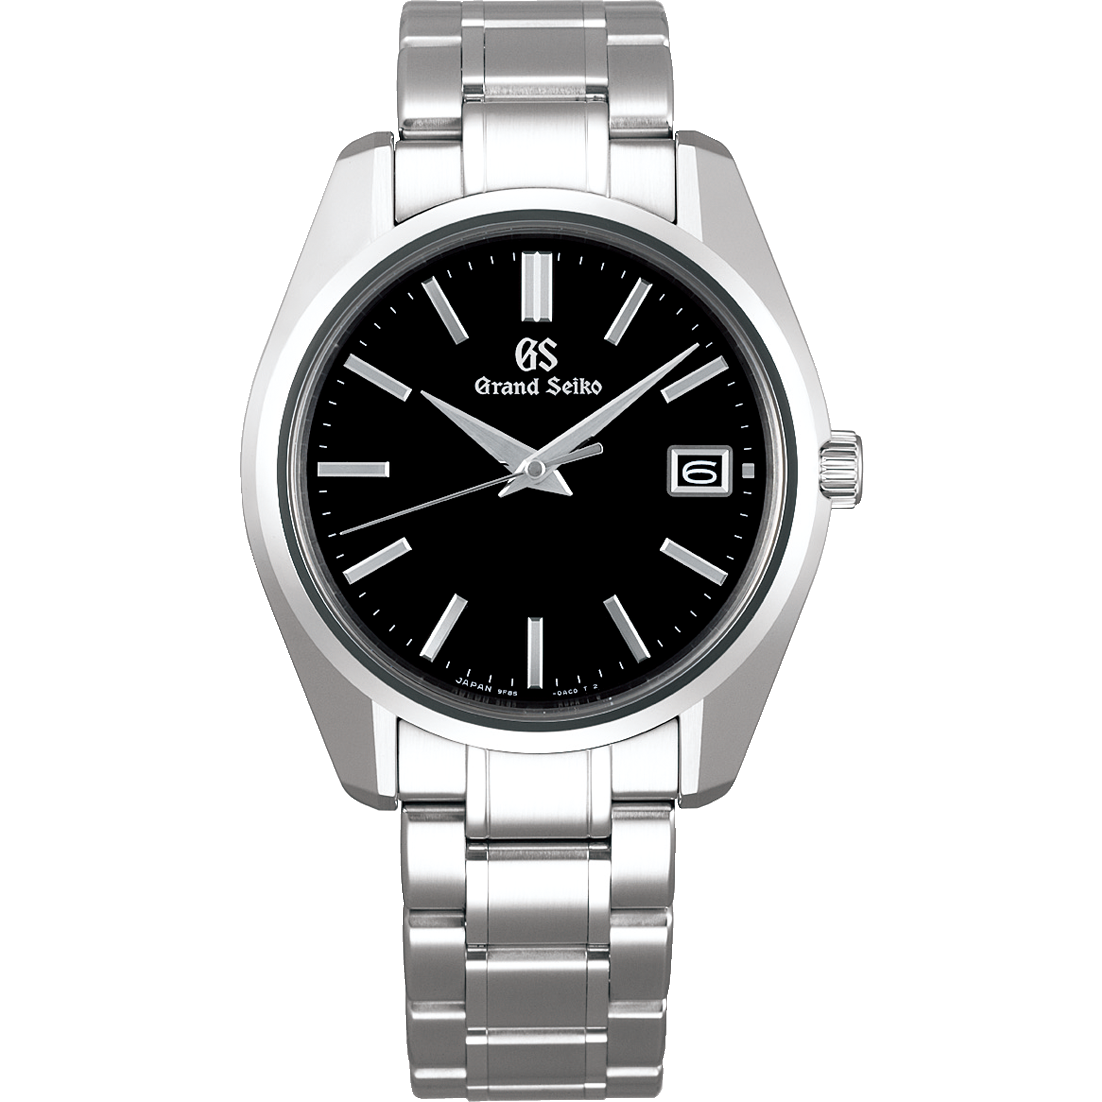 Grand Seiko SBGP003 quartz, black dial, stainless steel, men's watches